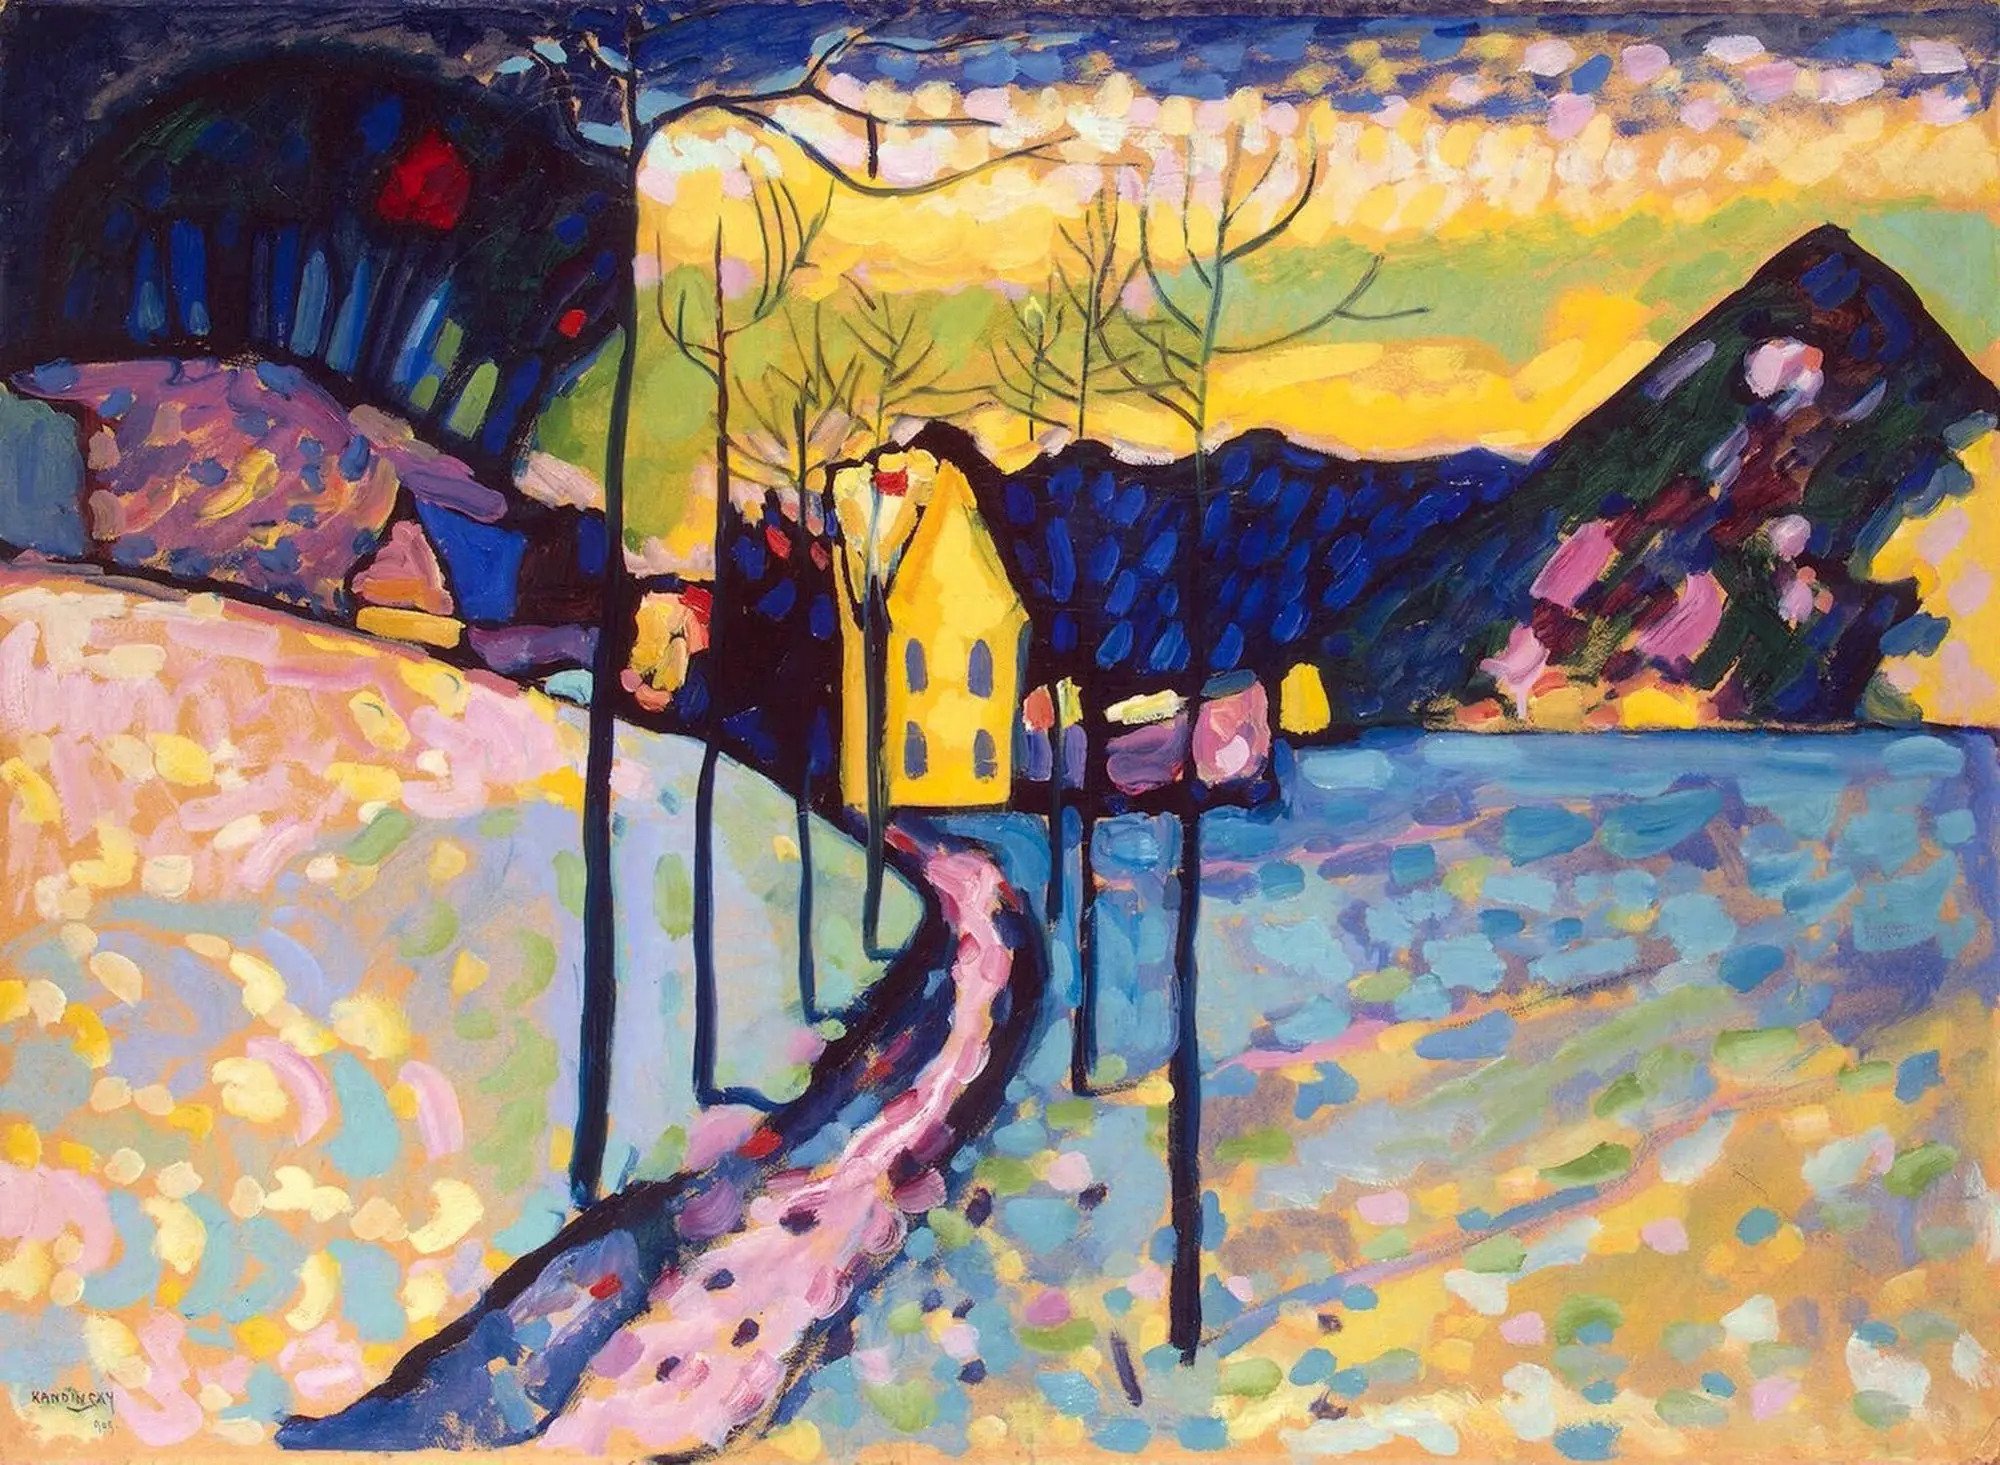 冬日景观 by 瓦西里 康定斯基 - 1909 - 70 x 97 cm 艾尔米塔什博物馆